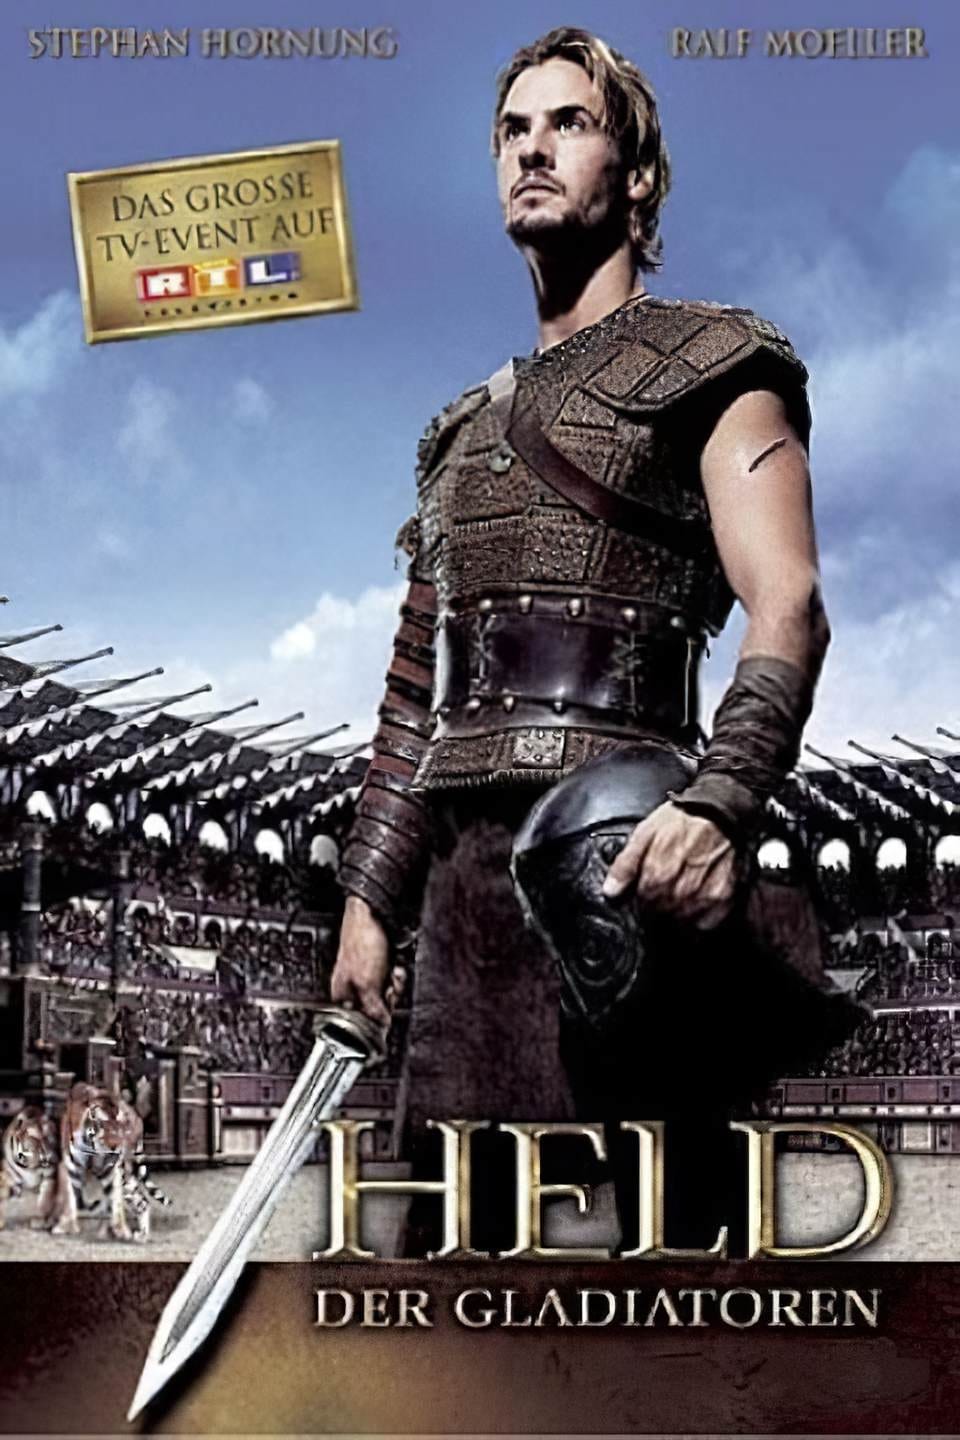 El honor de los gladiadores (2003)